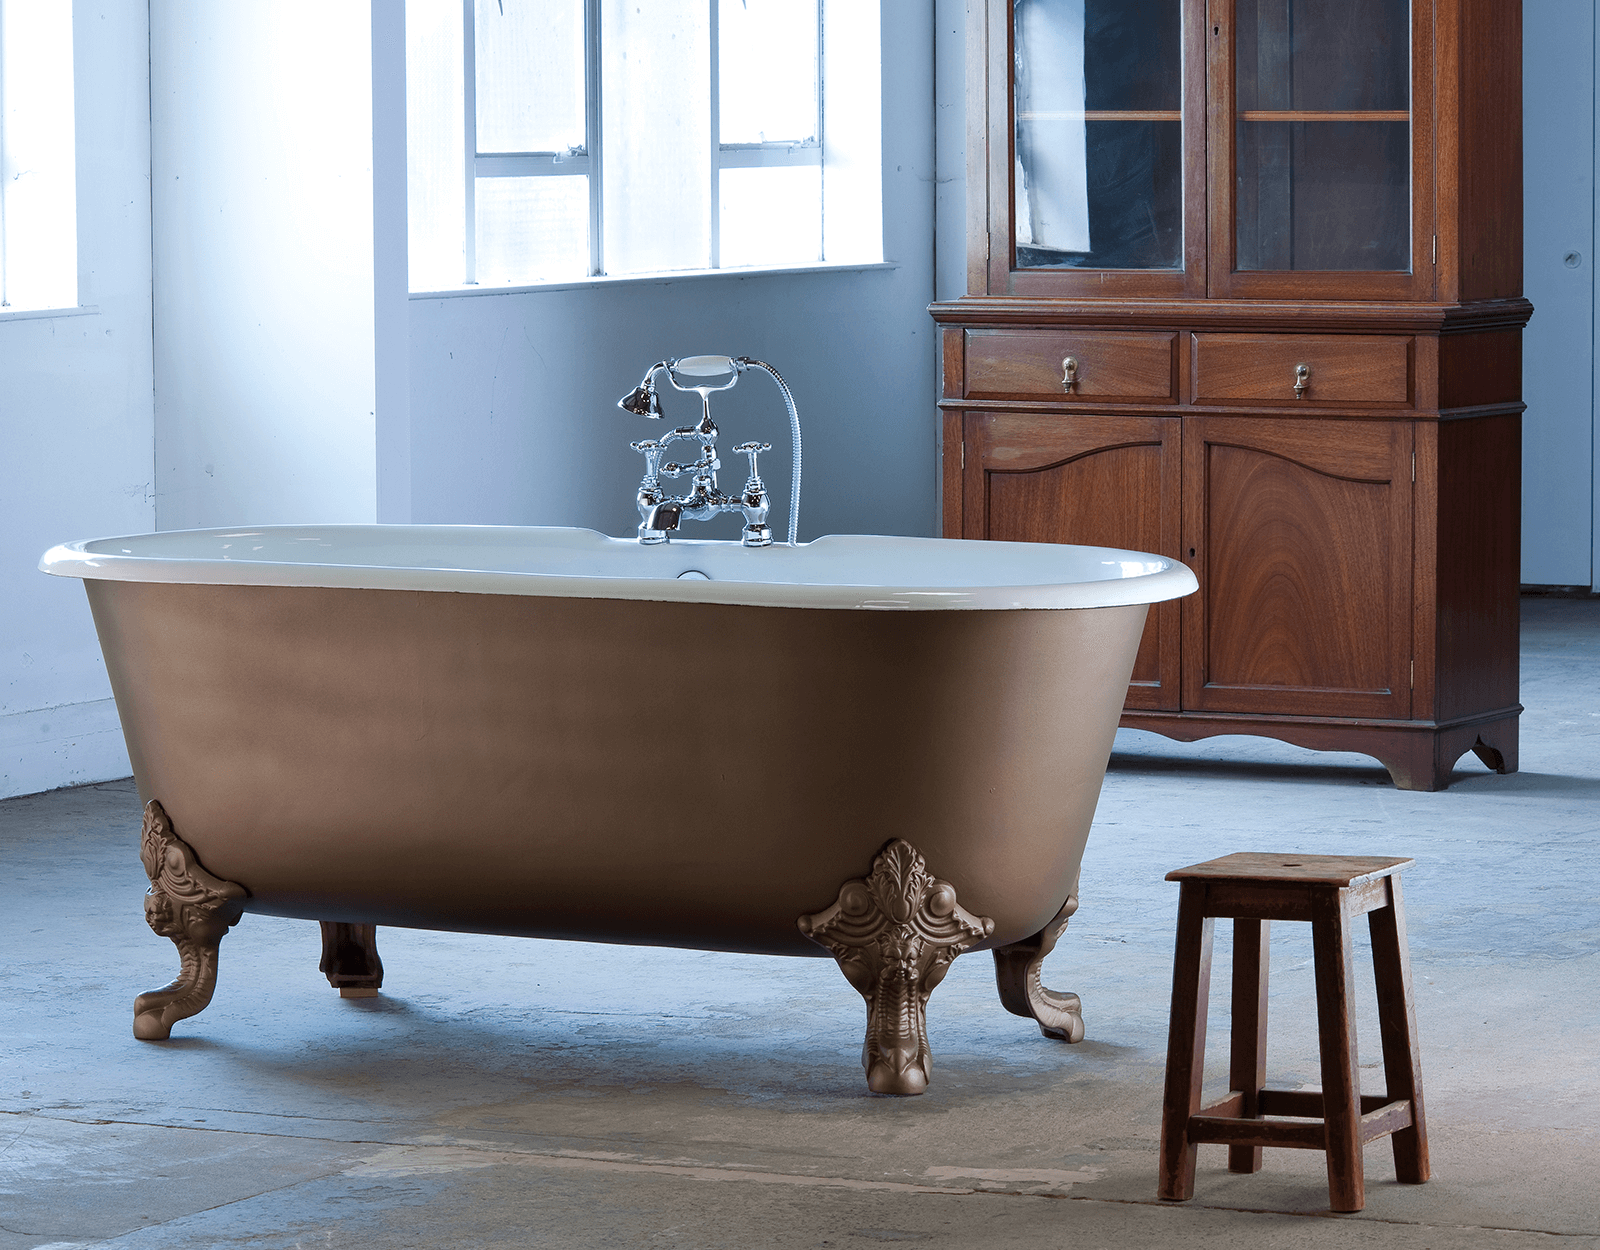 Voorkomen Voorkeur Winst Klassiek vrijstaand gietizjeren bad met pootset Cheverny 1850 -  TheClassicHouse - de klassieke badkamer en keuken specialist